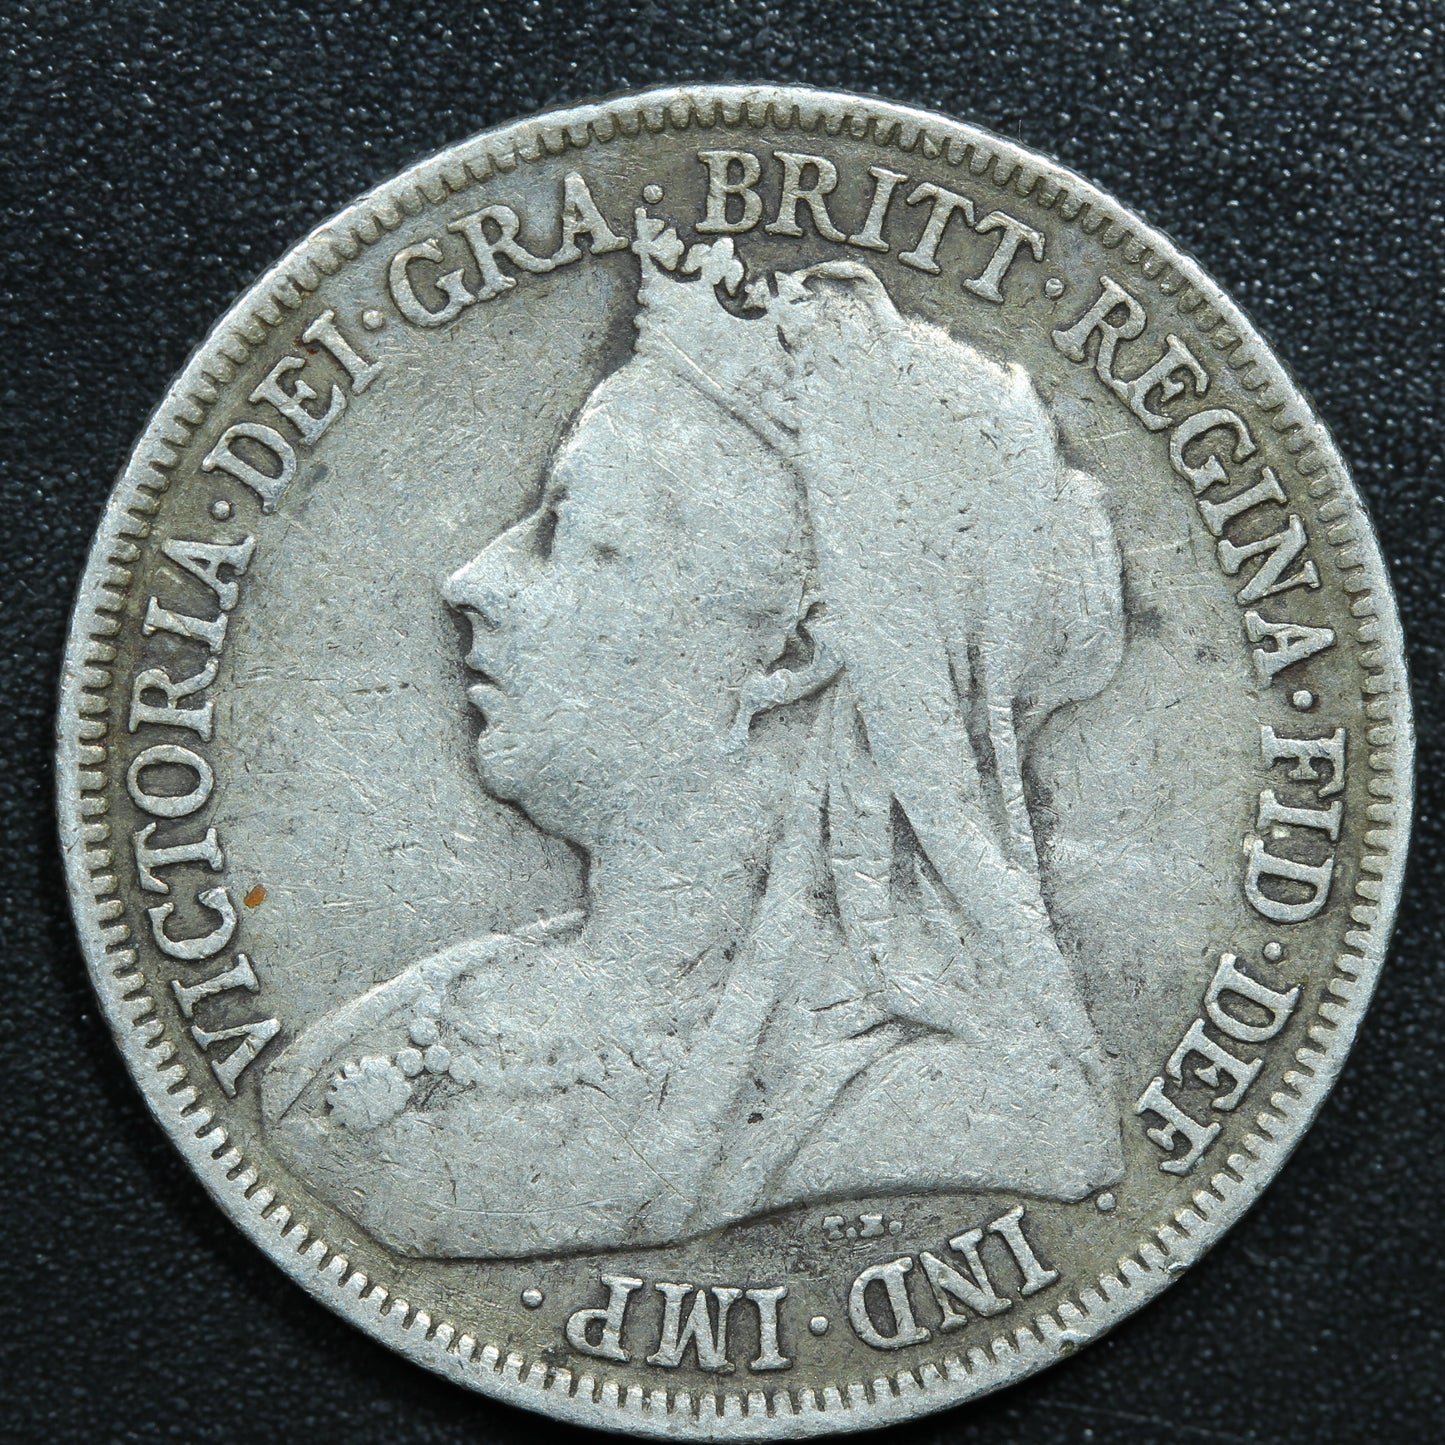 1898 United Kingdom 1 One Shilling Victoria Silver Coin KM# 780